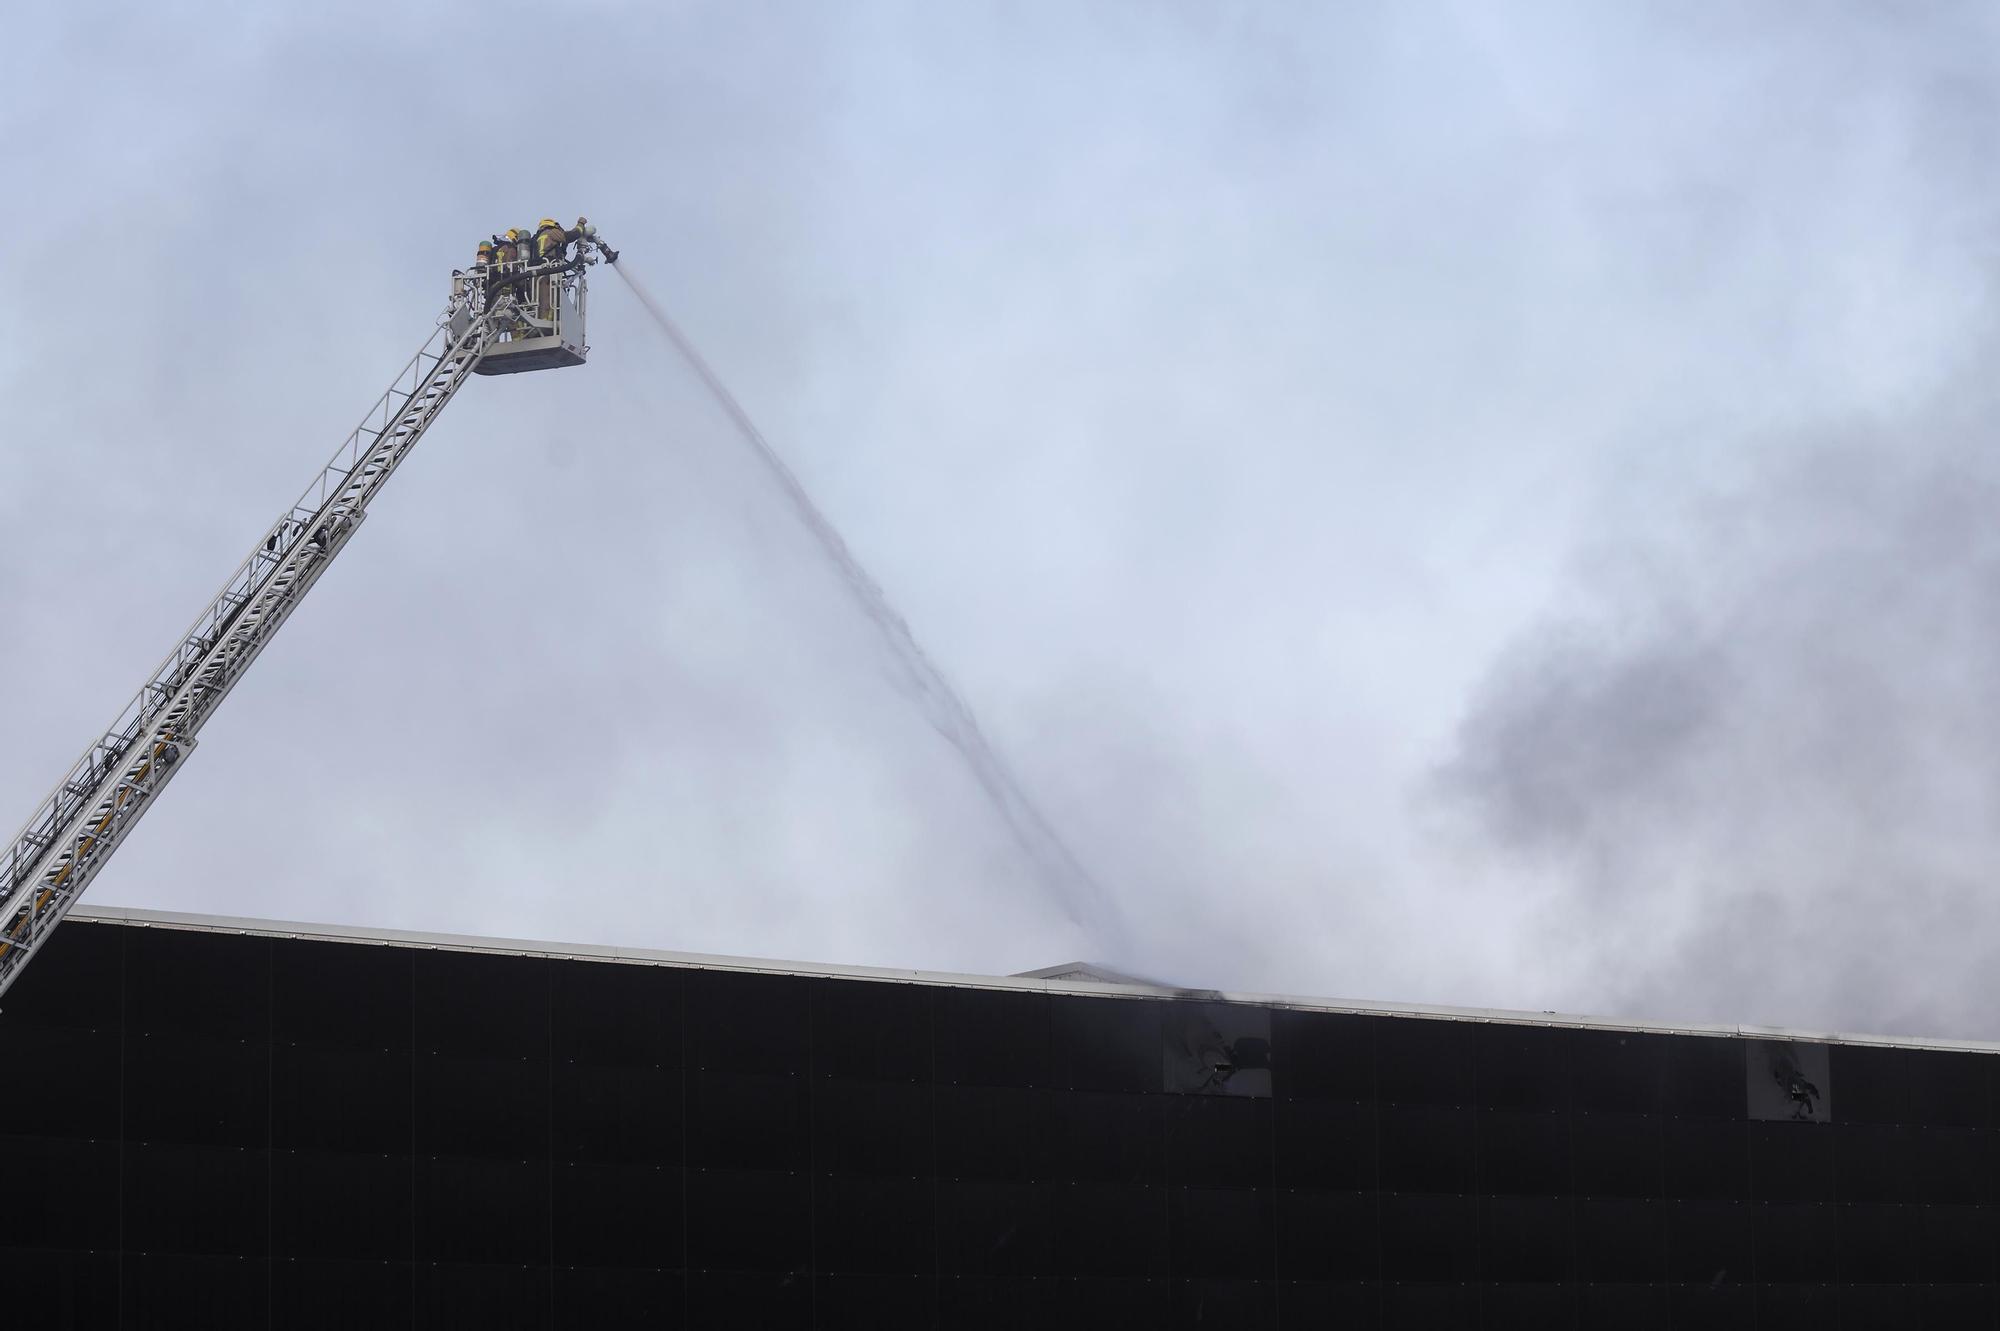 Les imatges de l'incendi de la fàbrica tèxtil a Sant Jaume de Llierca